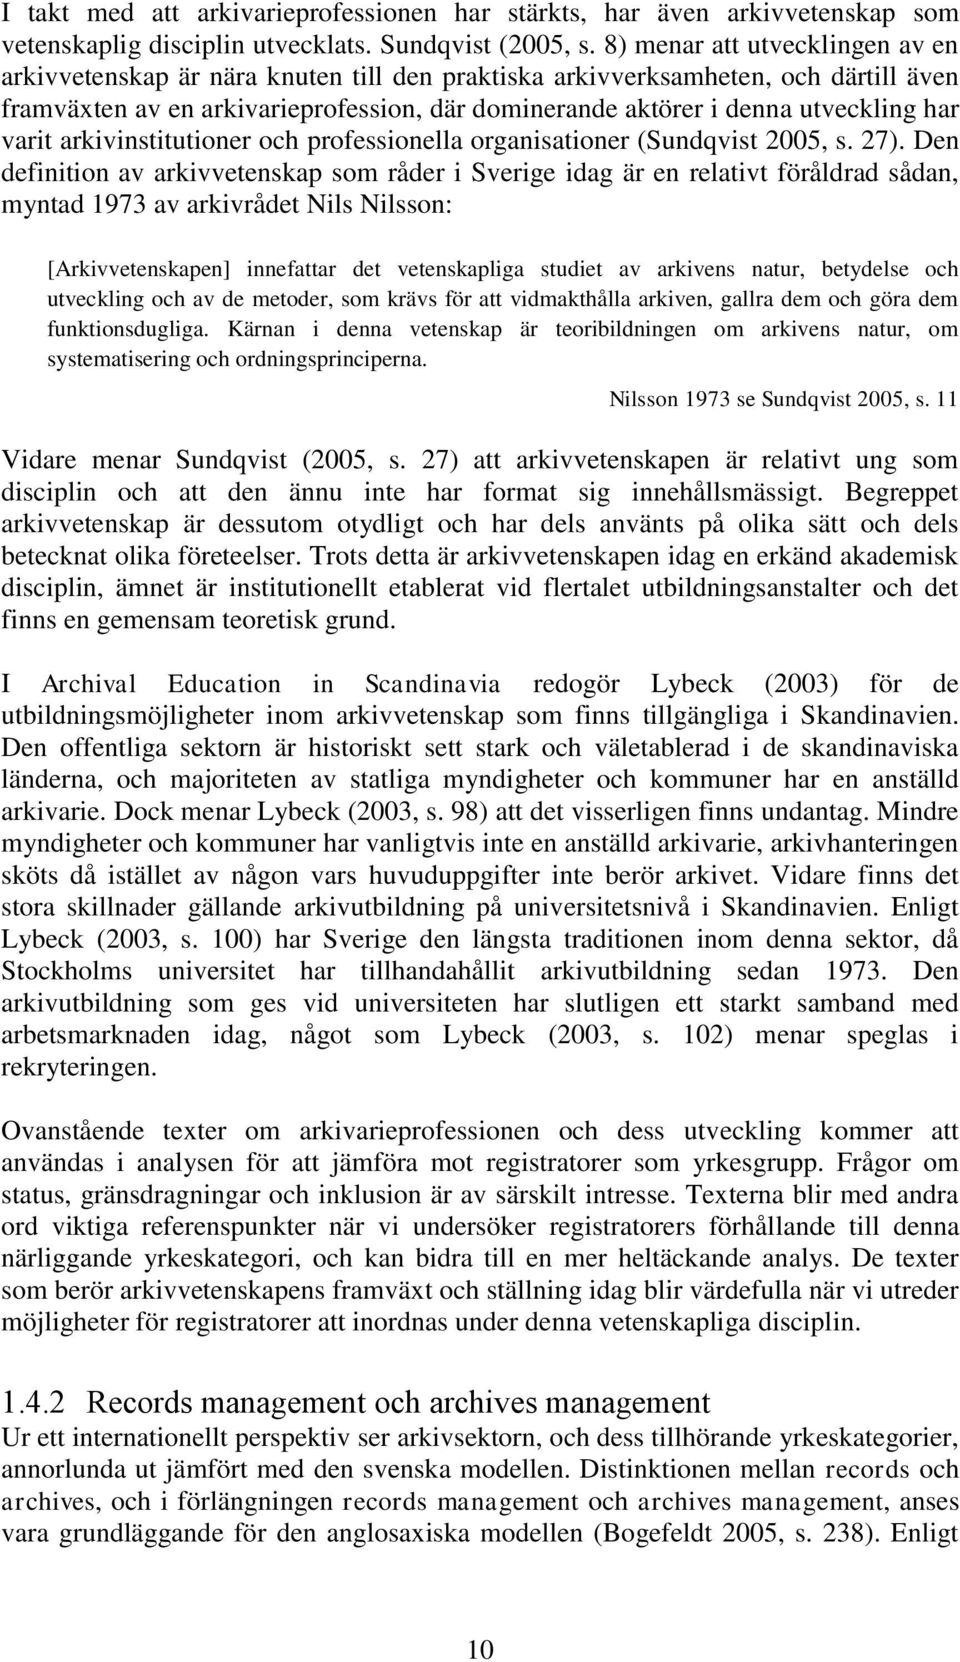 har varit arkivinstitutioner och professionella organisationer (Sundqvist 2005, s. 27).